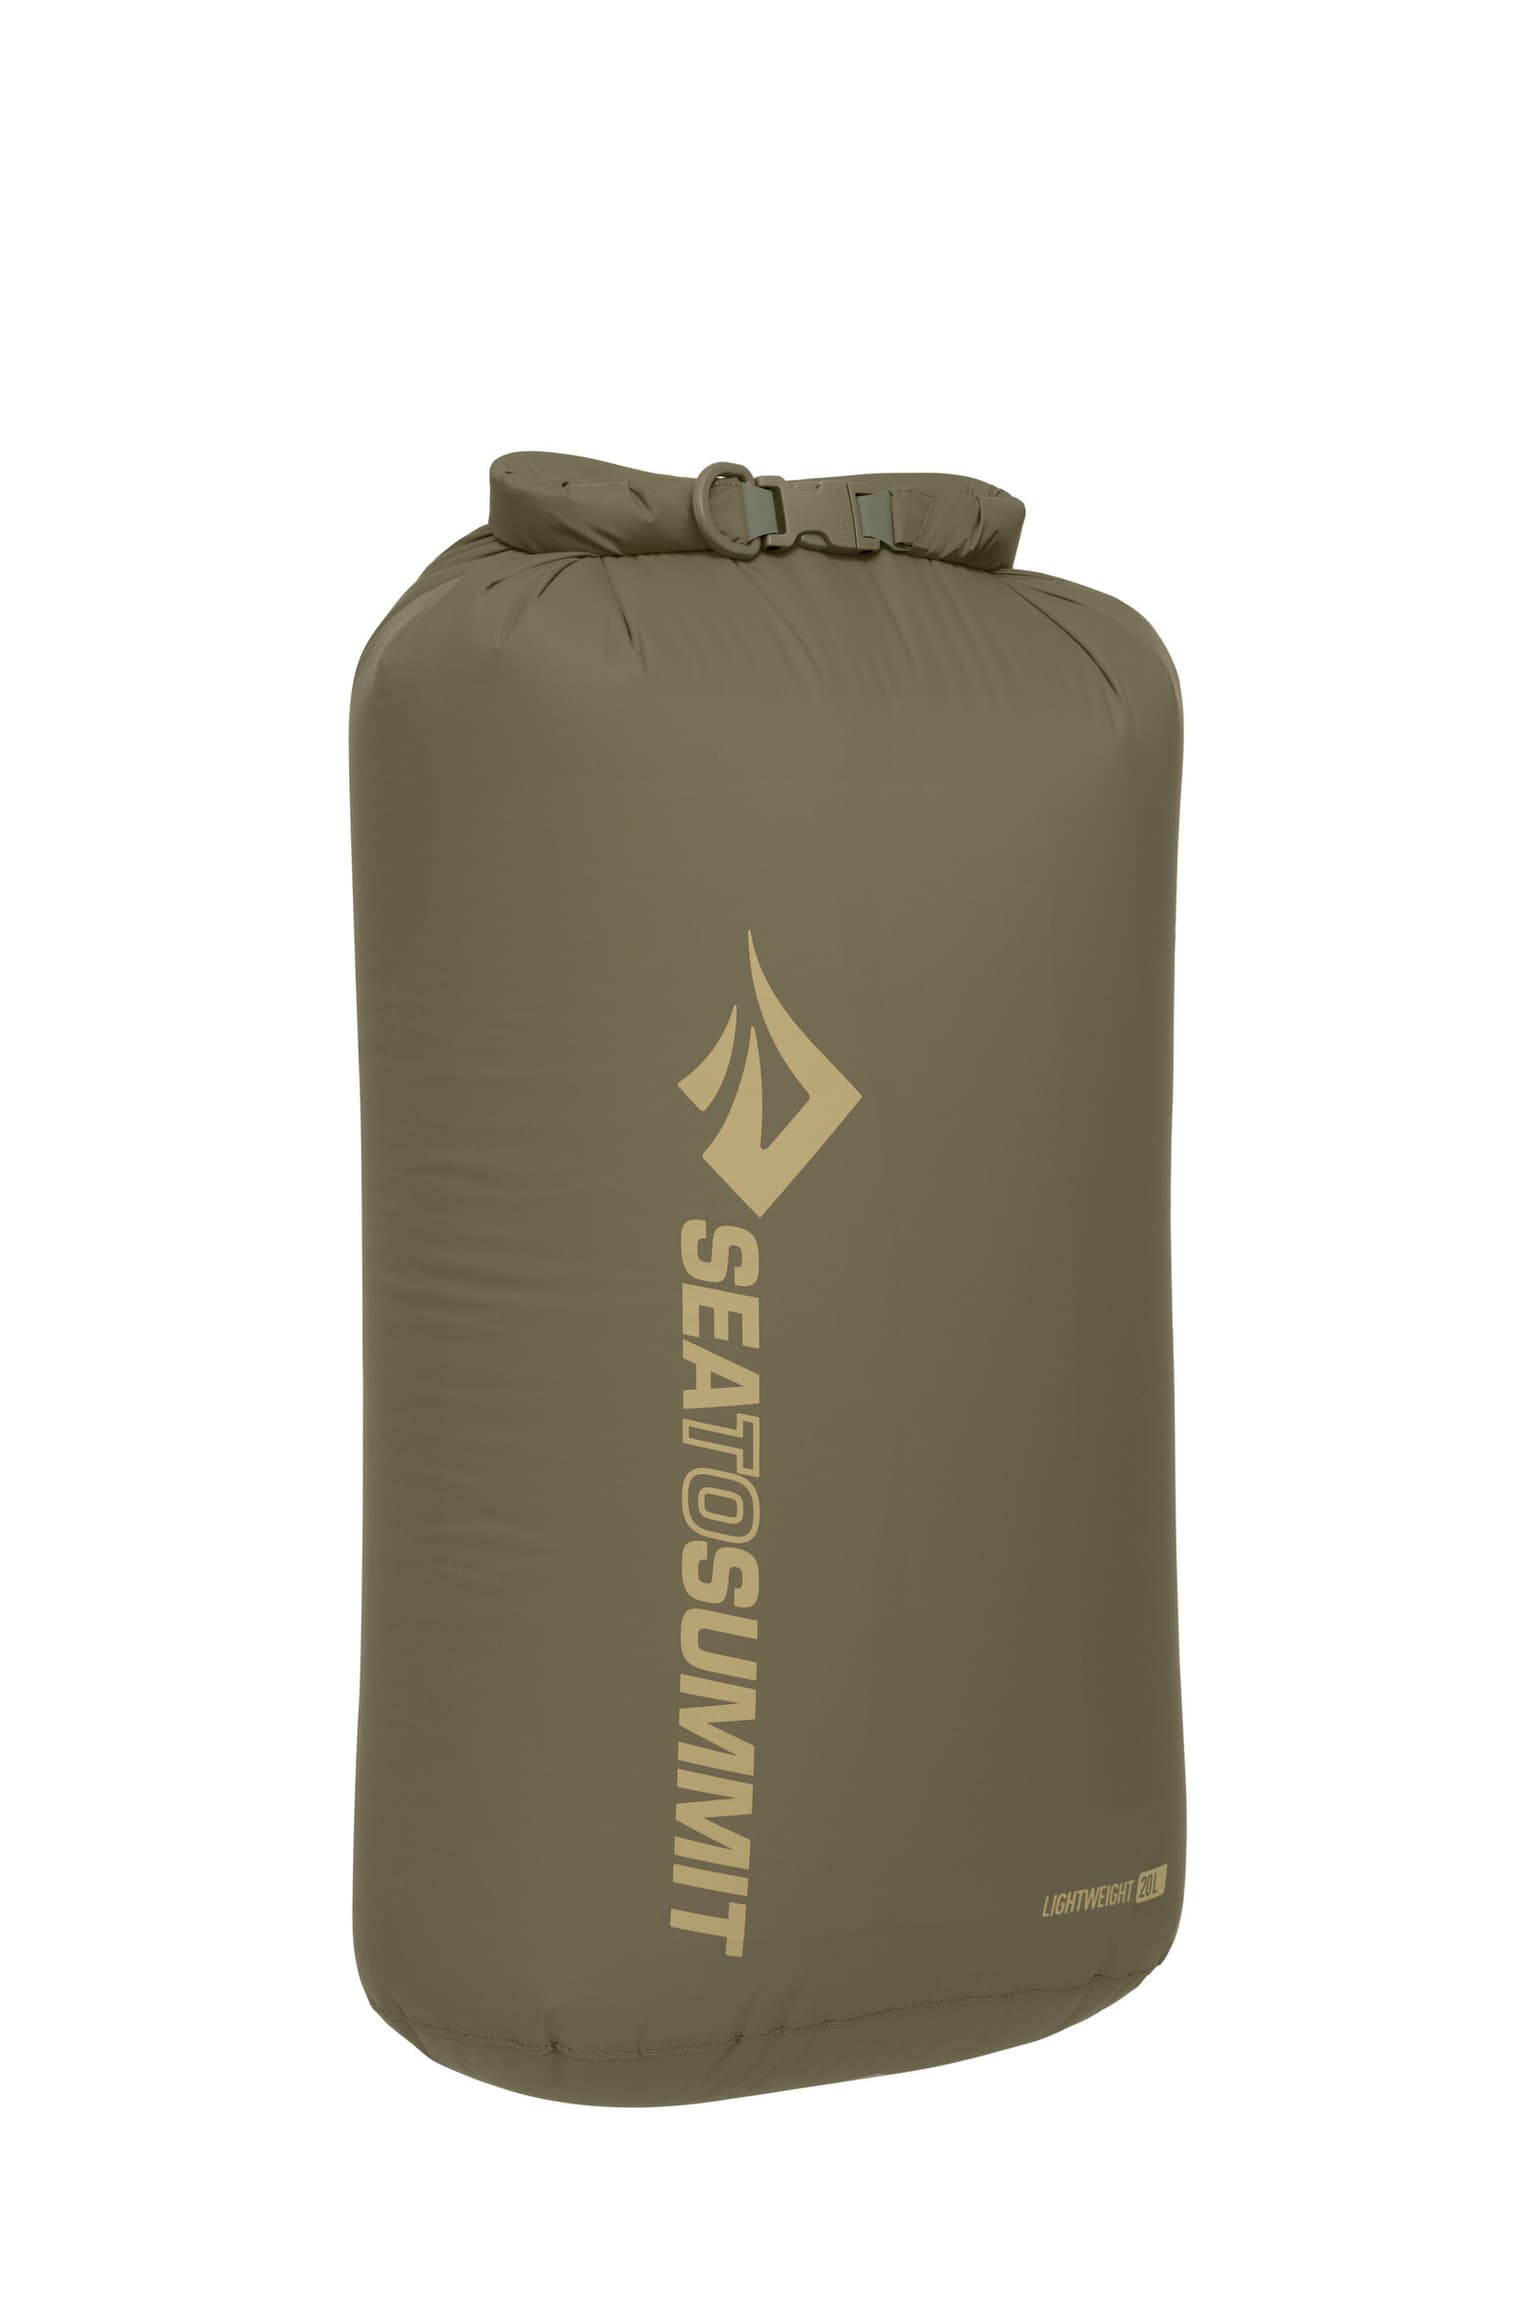 Sea To Summit Sea To Summit Lightweight Dry Bag 20L Dry Bag oliva 1